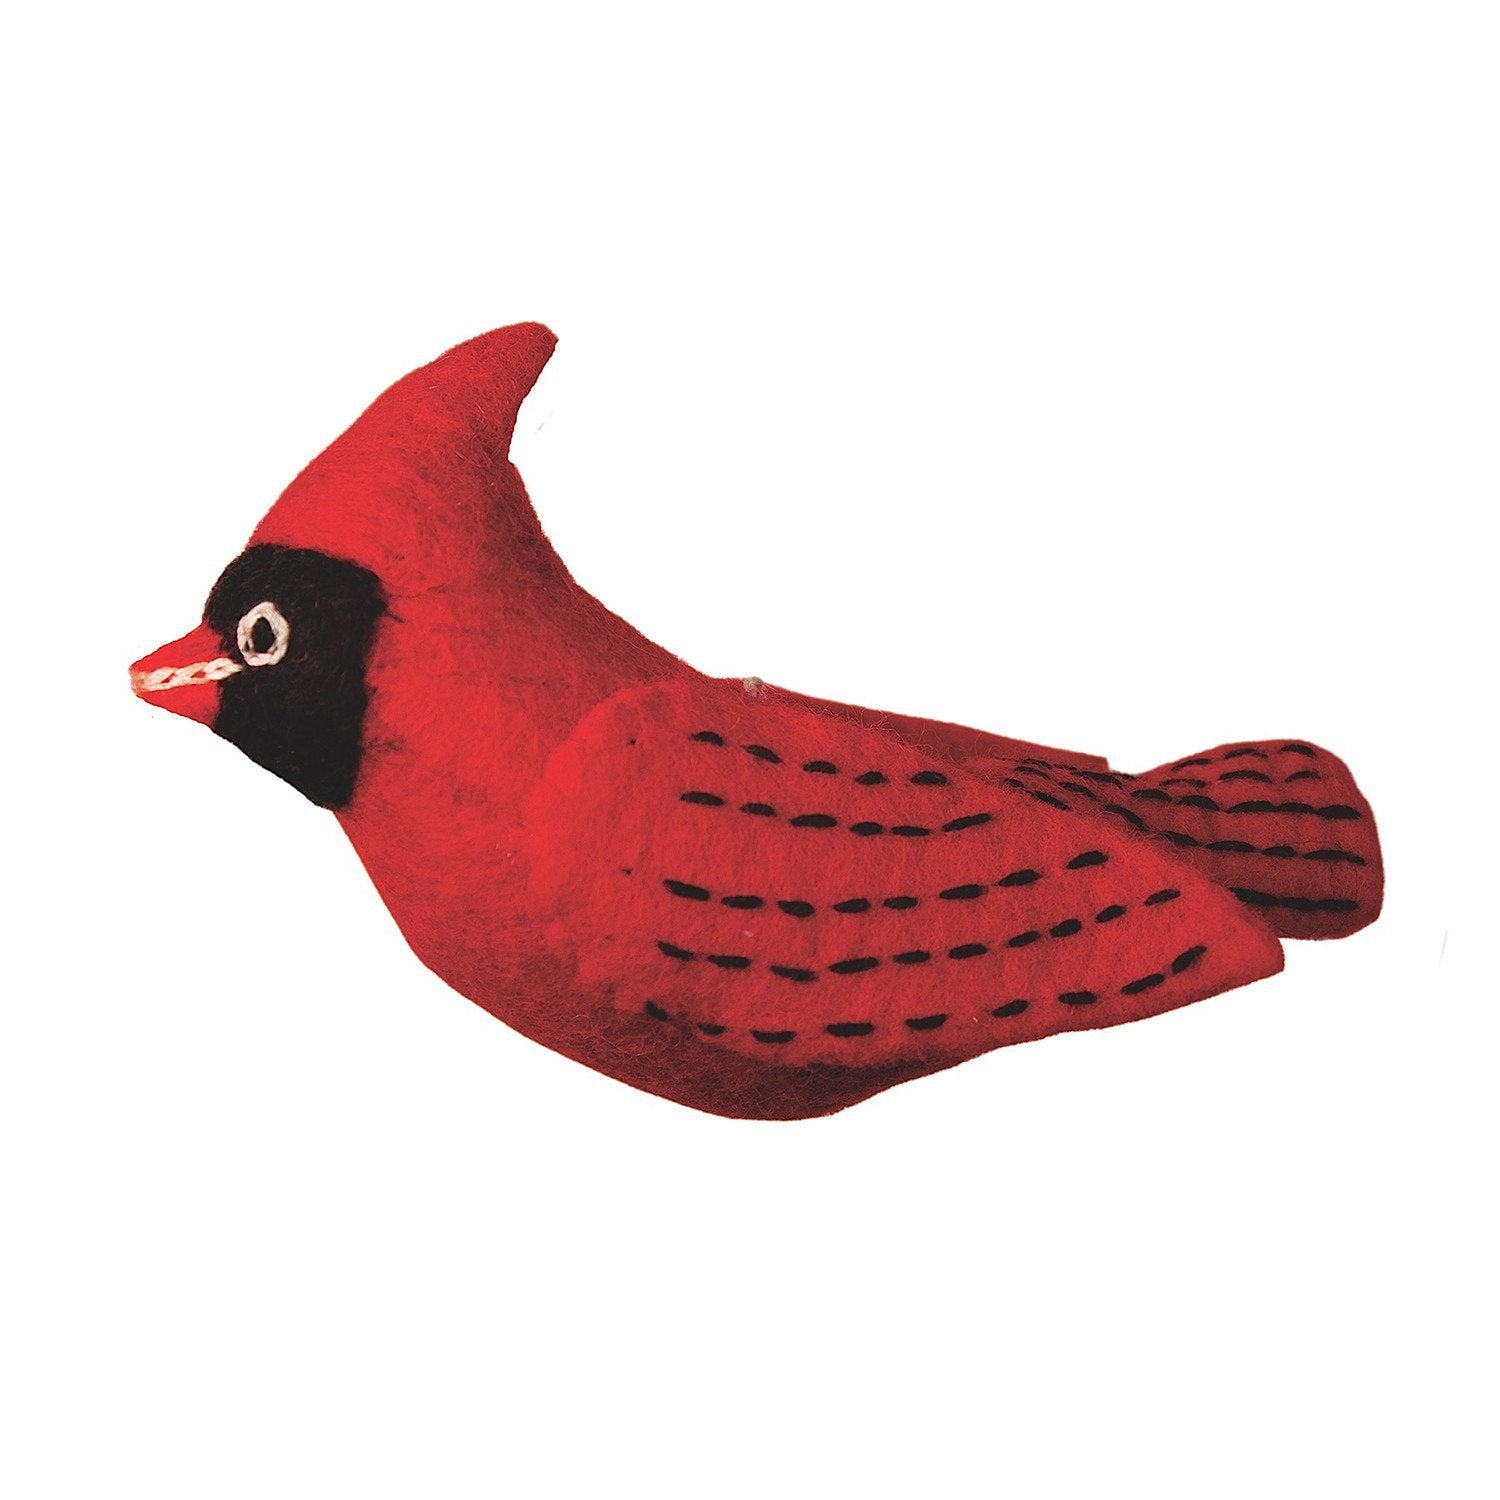 Felt Bird Garden Ornament - Cardinal - Wild Woolies (G)